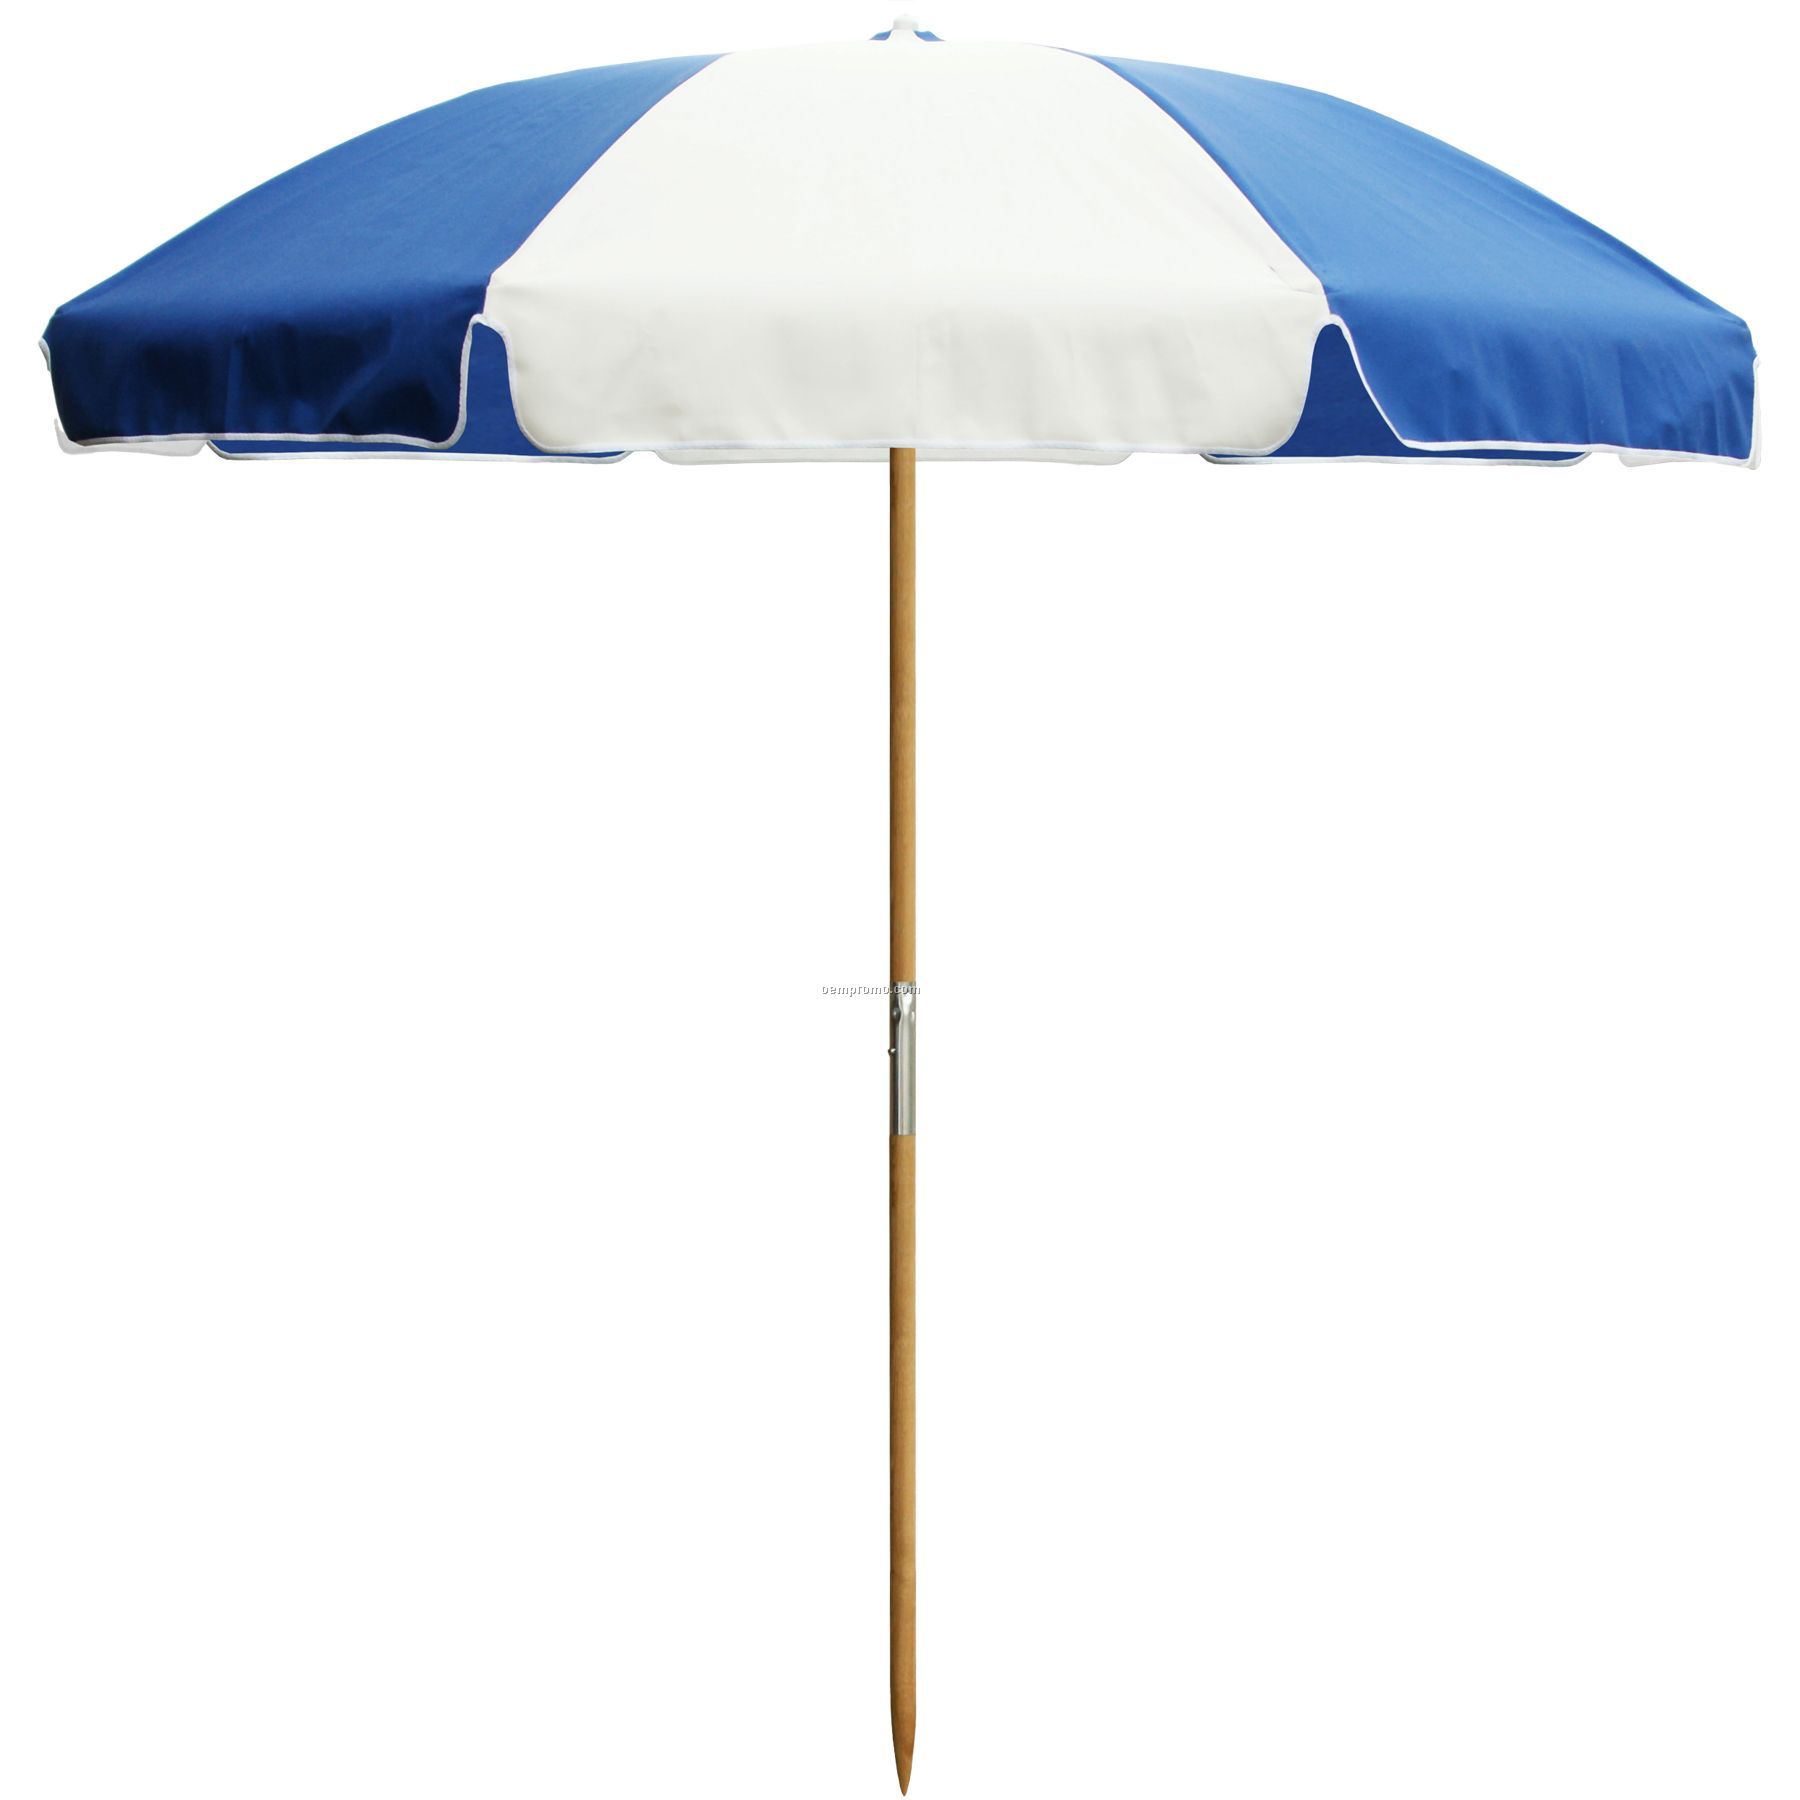 Us Made Deluxe Beach Umbrella, 7 1/2 Foot Diameter